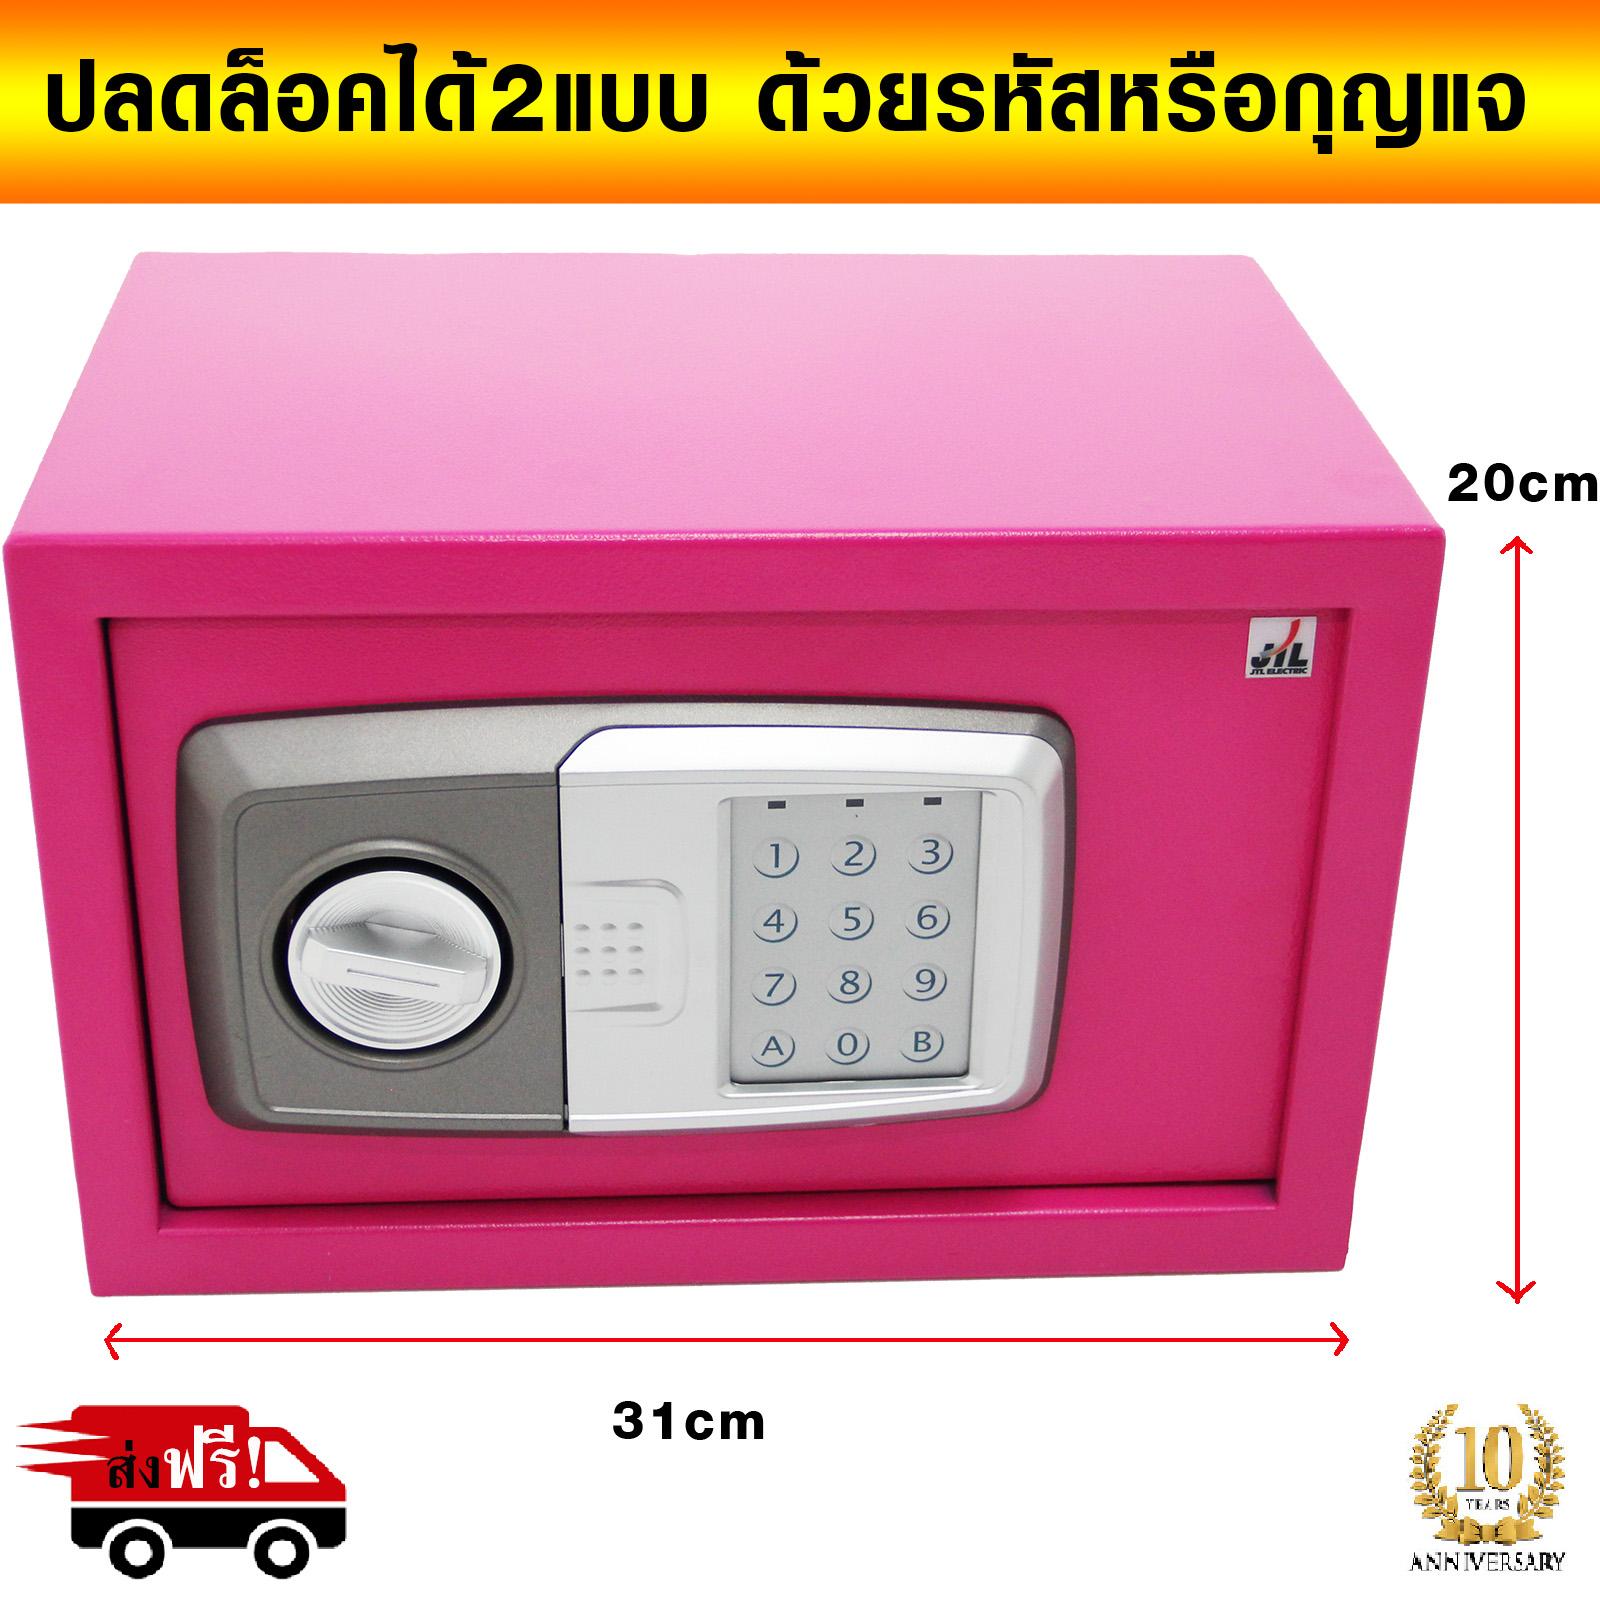 ตู้เซฟนิรภัย ตู้เซฟ (Size : 31 x 20 x 20 cm.) safety box safety deposit box